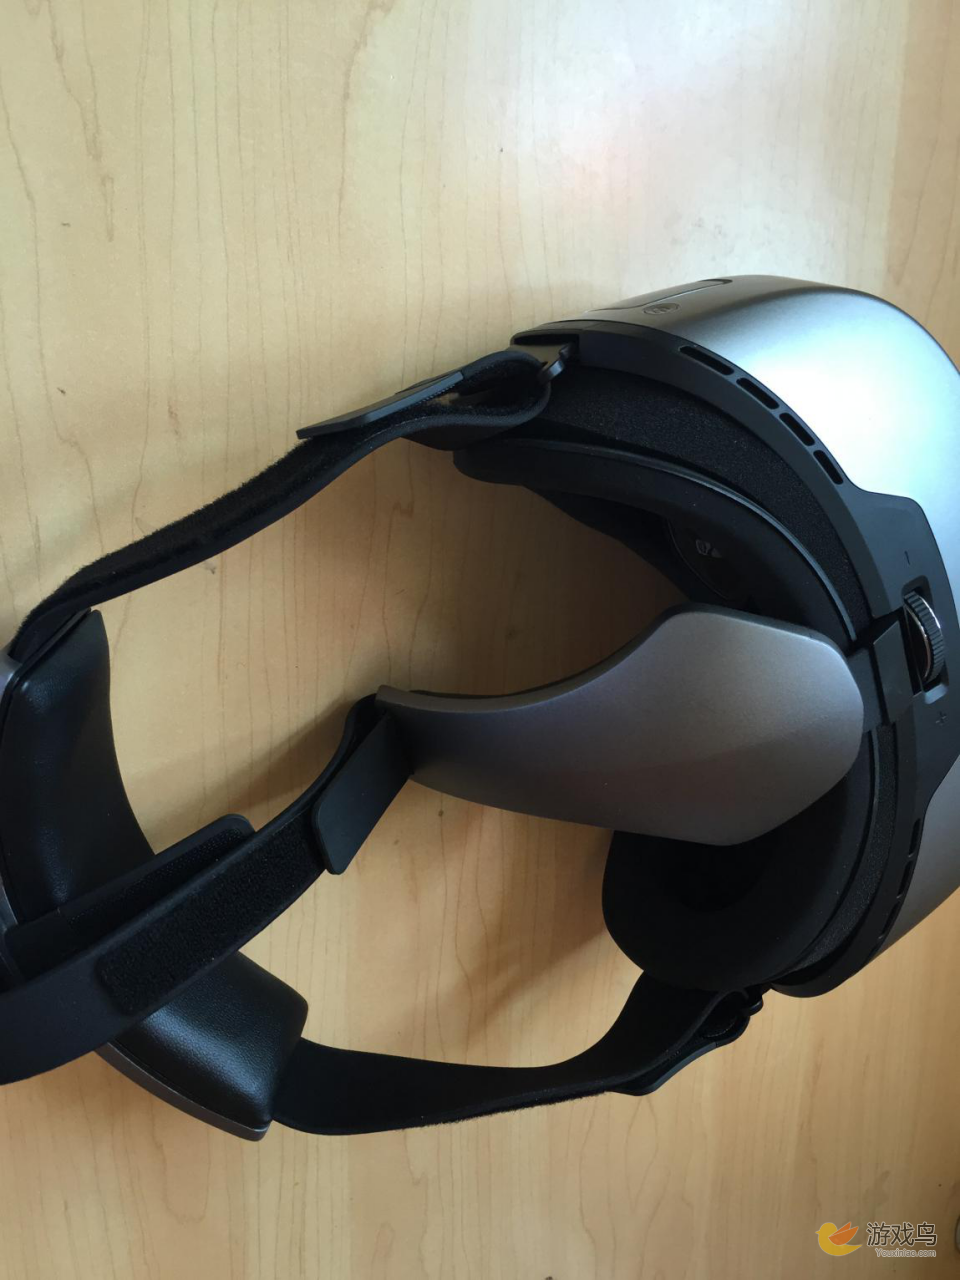 大朋VR一体机真机评测 到底值不值得买？[多图]图片9